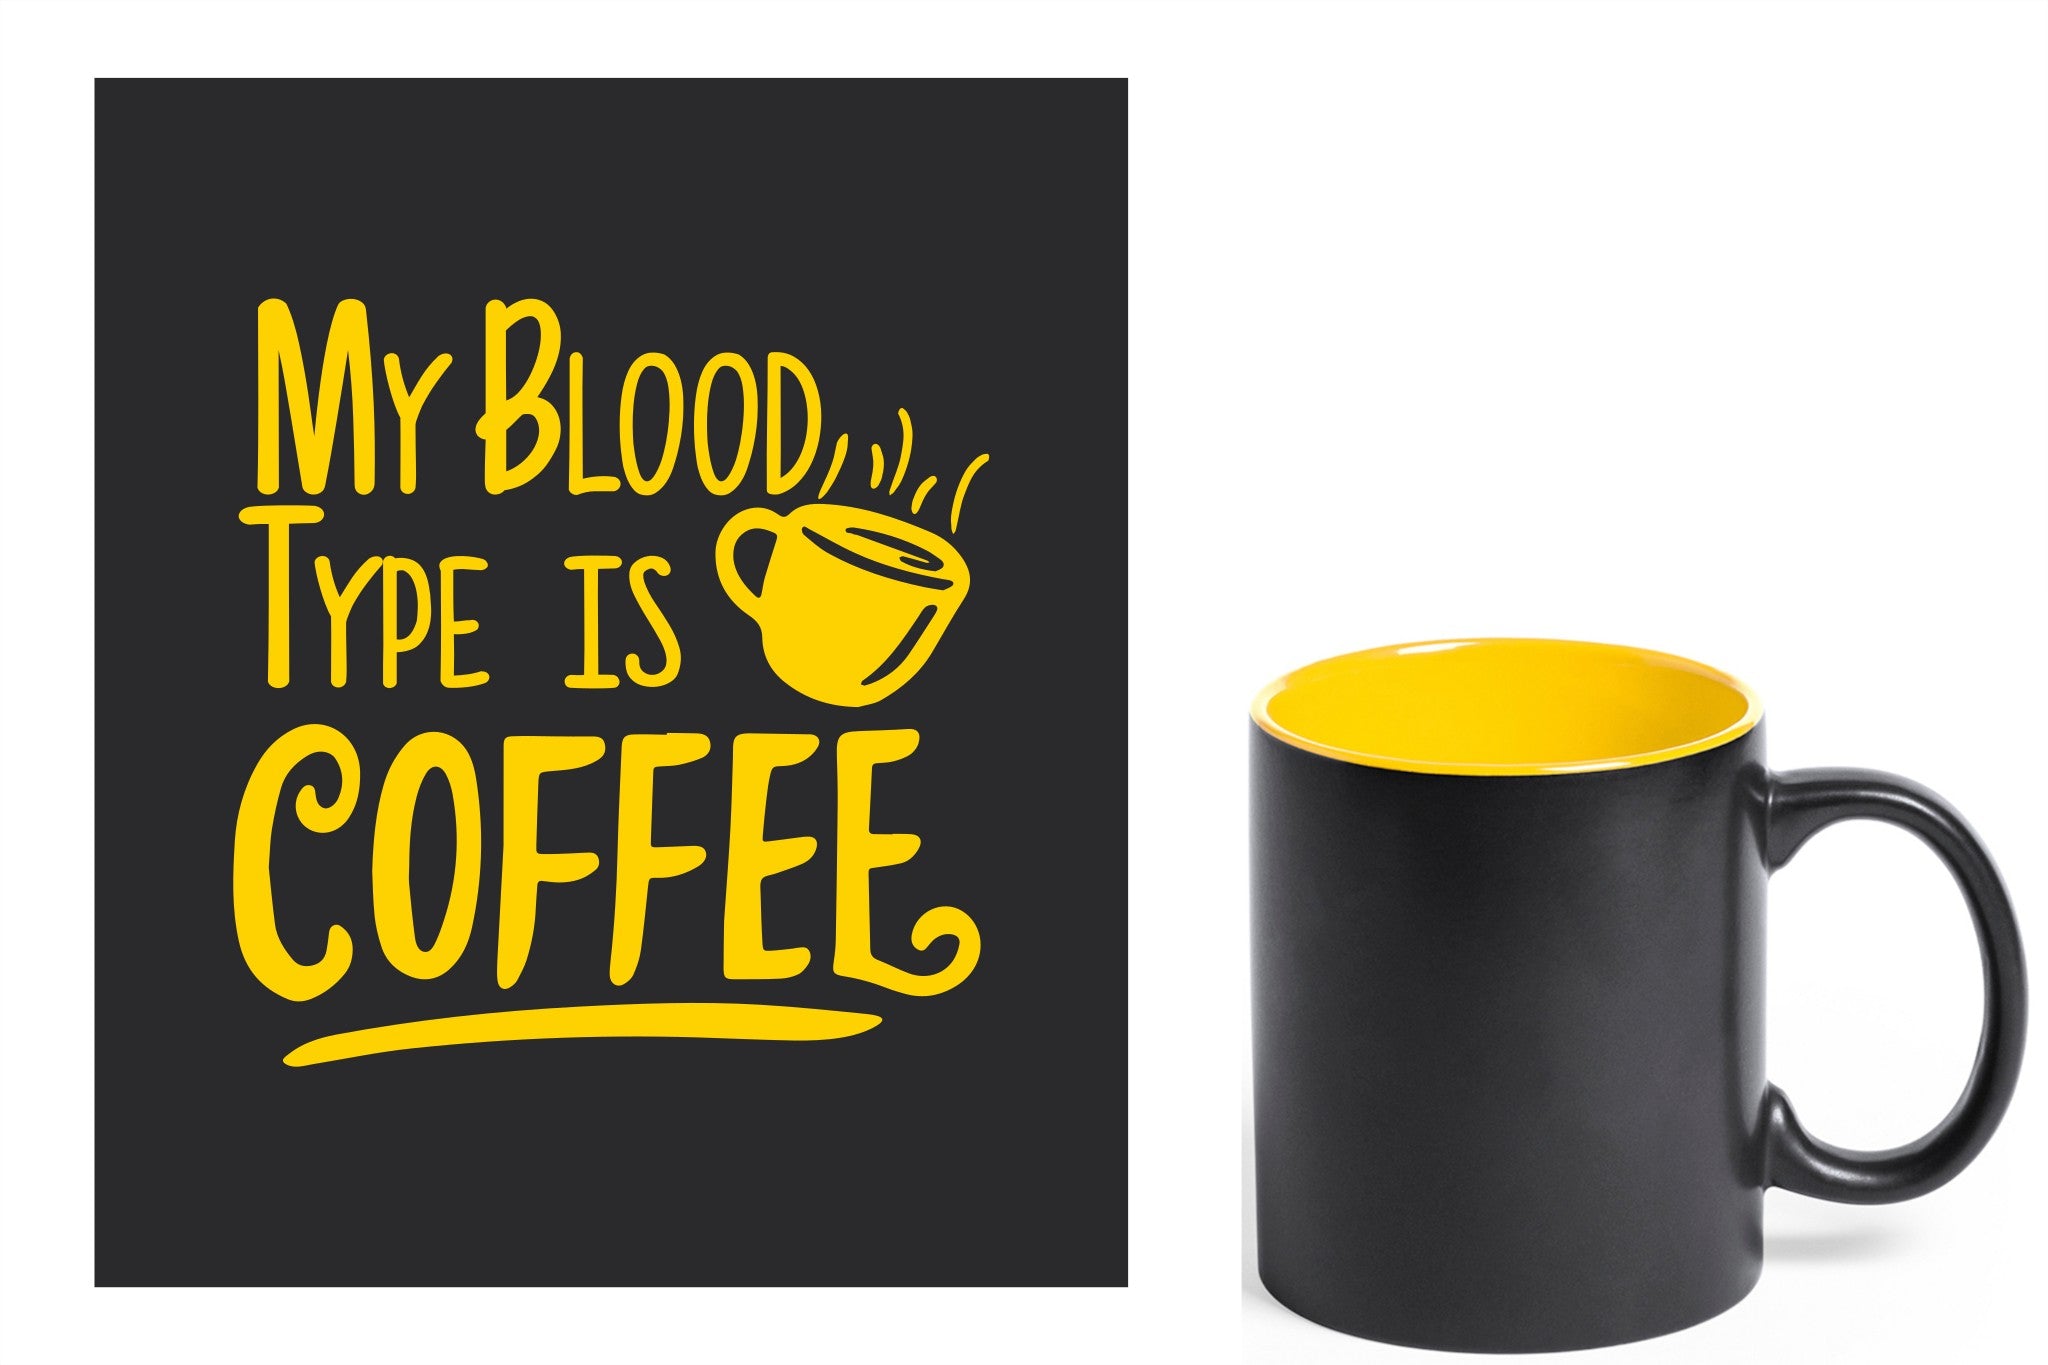 zwarte keramische mok met gele gravure  'My blood type is coffee'.